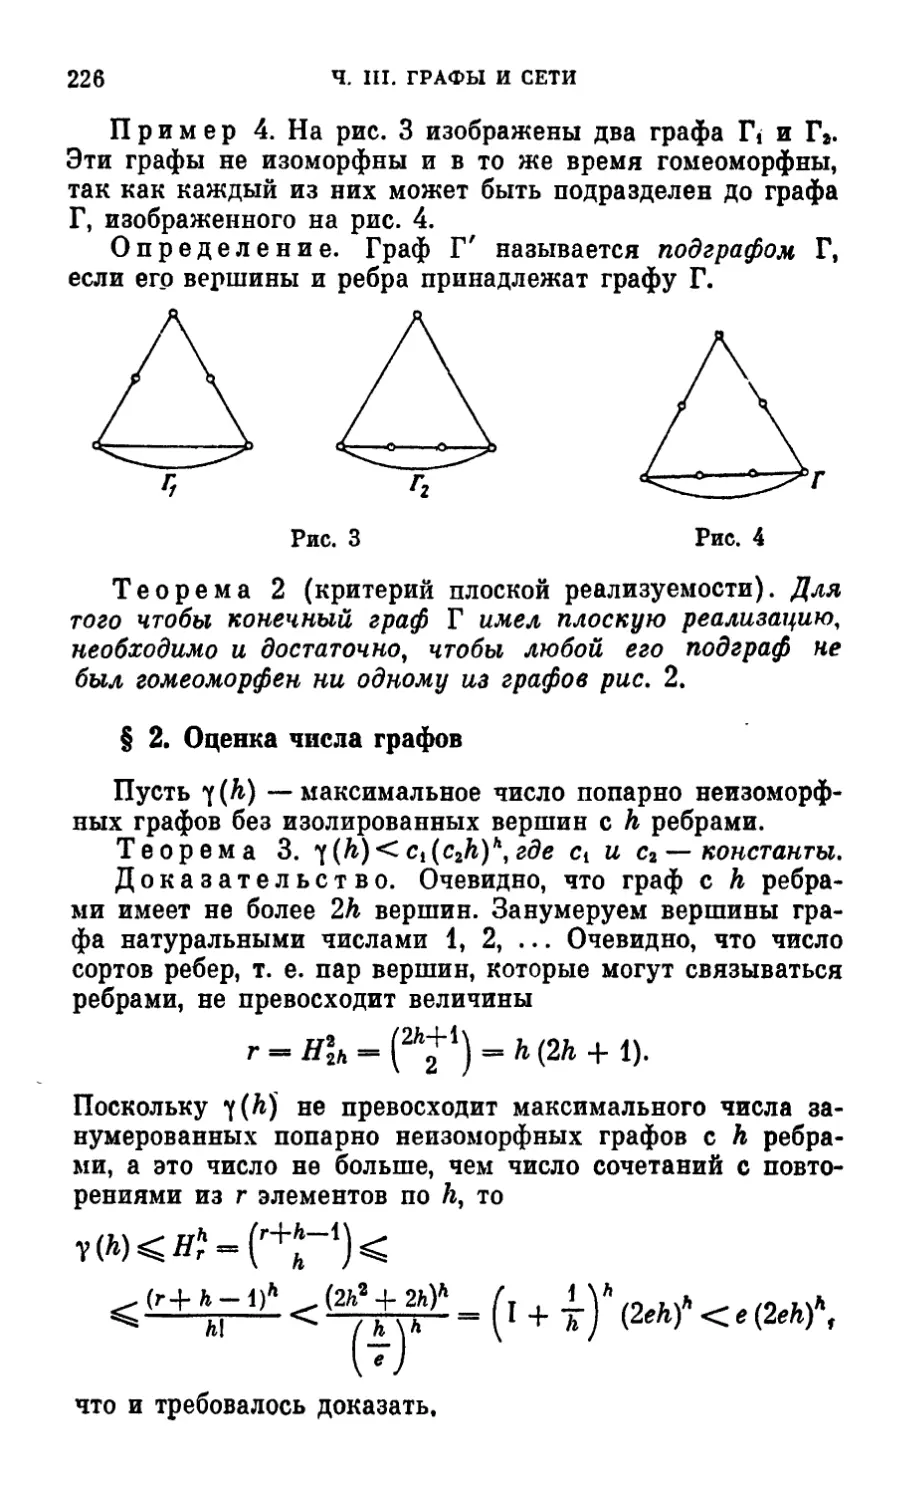 § 2. Оценка числа графов